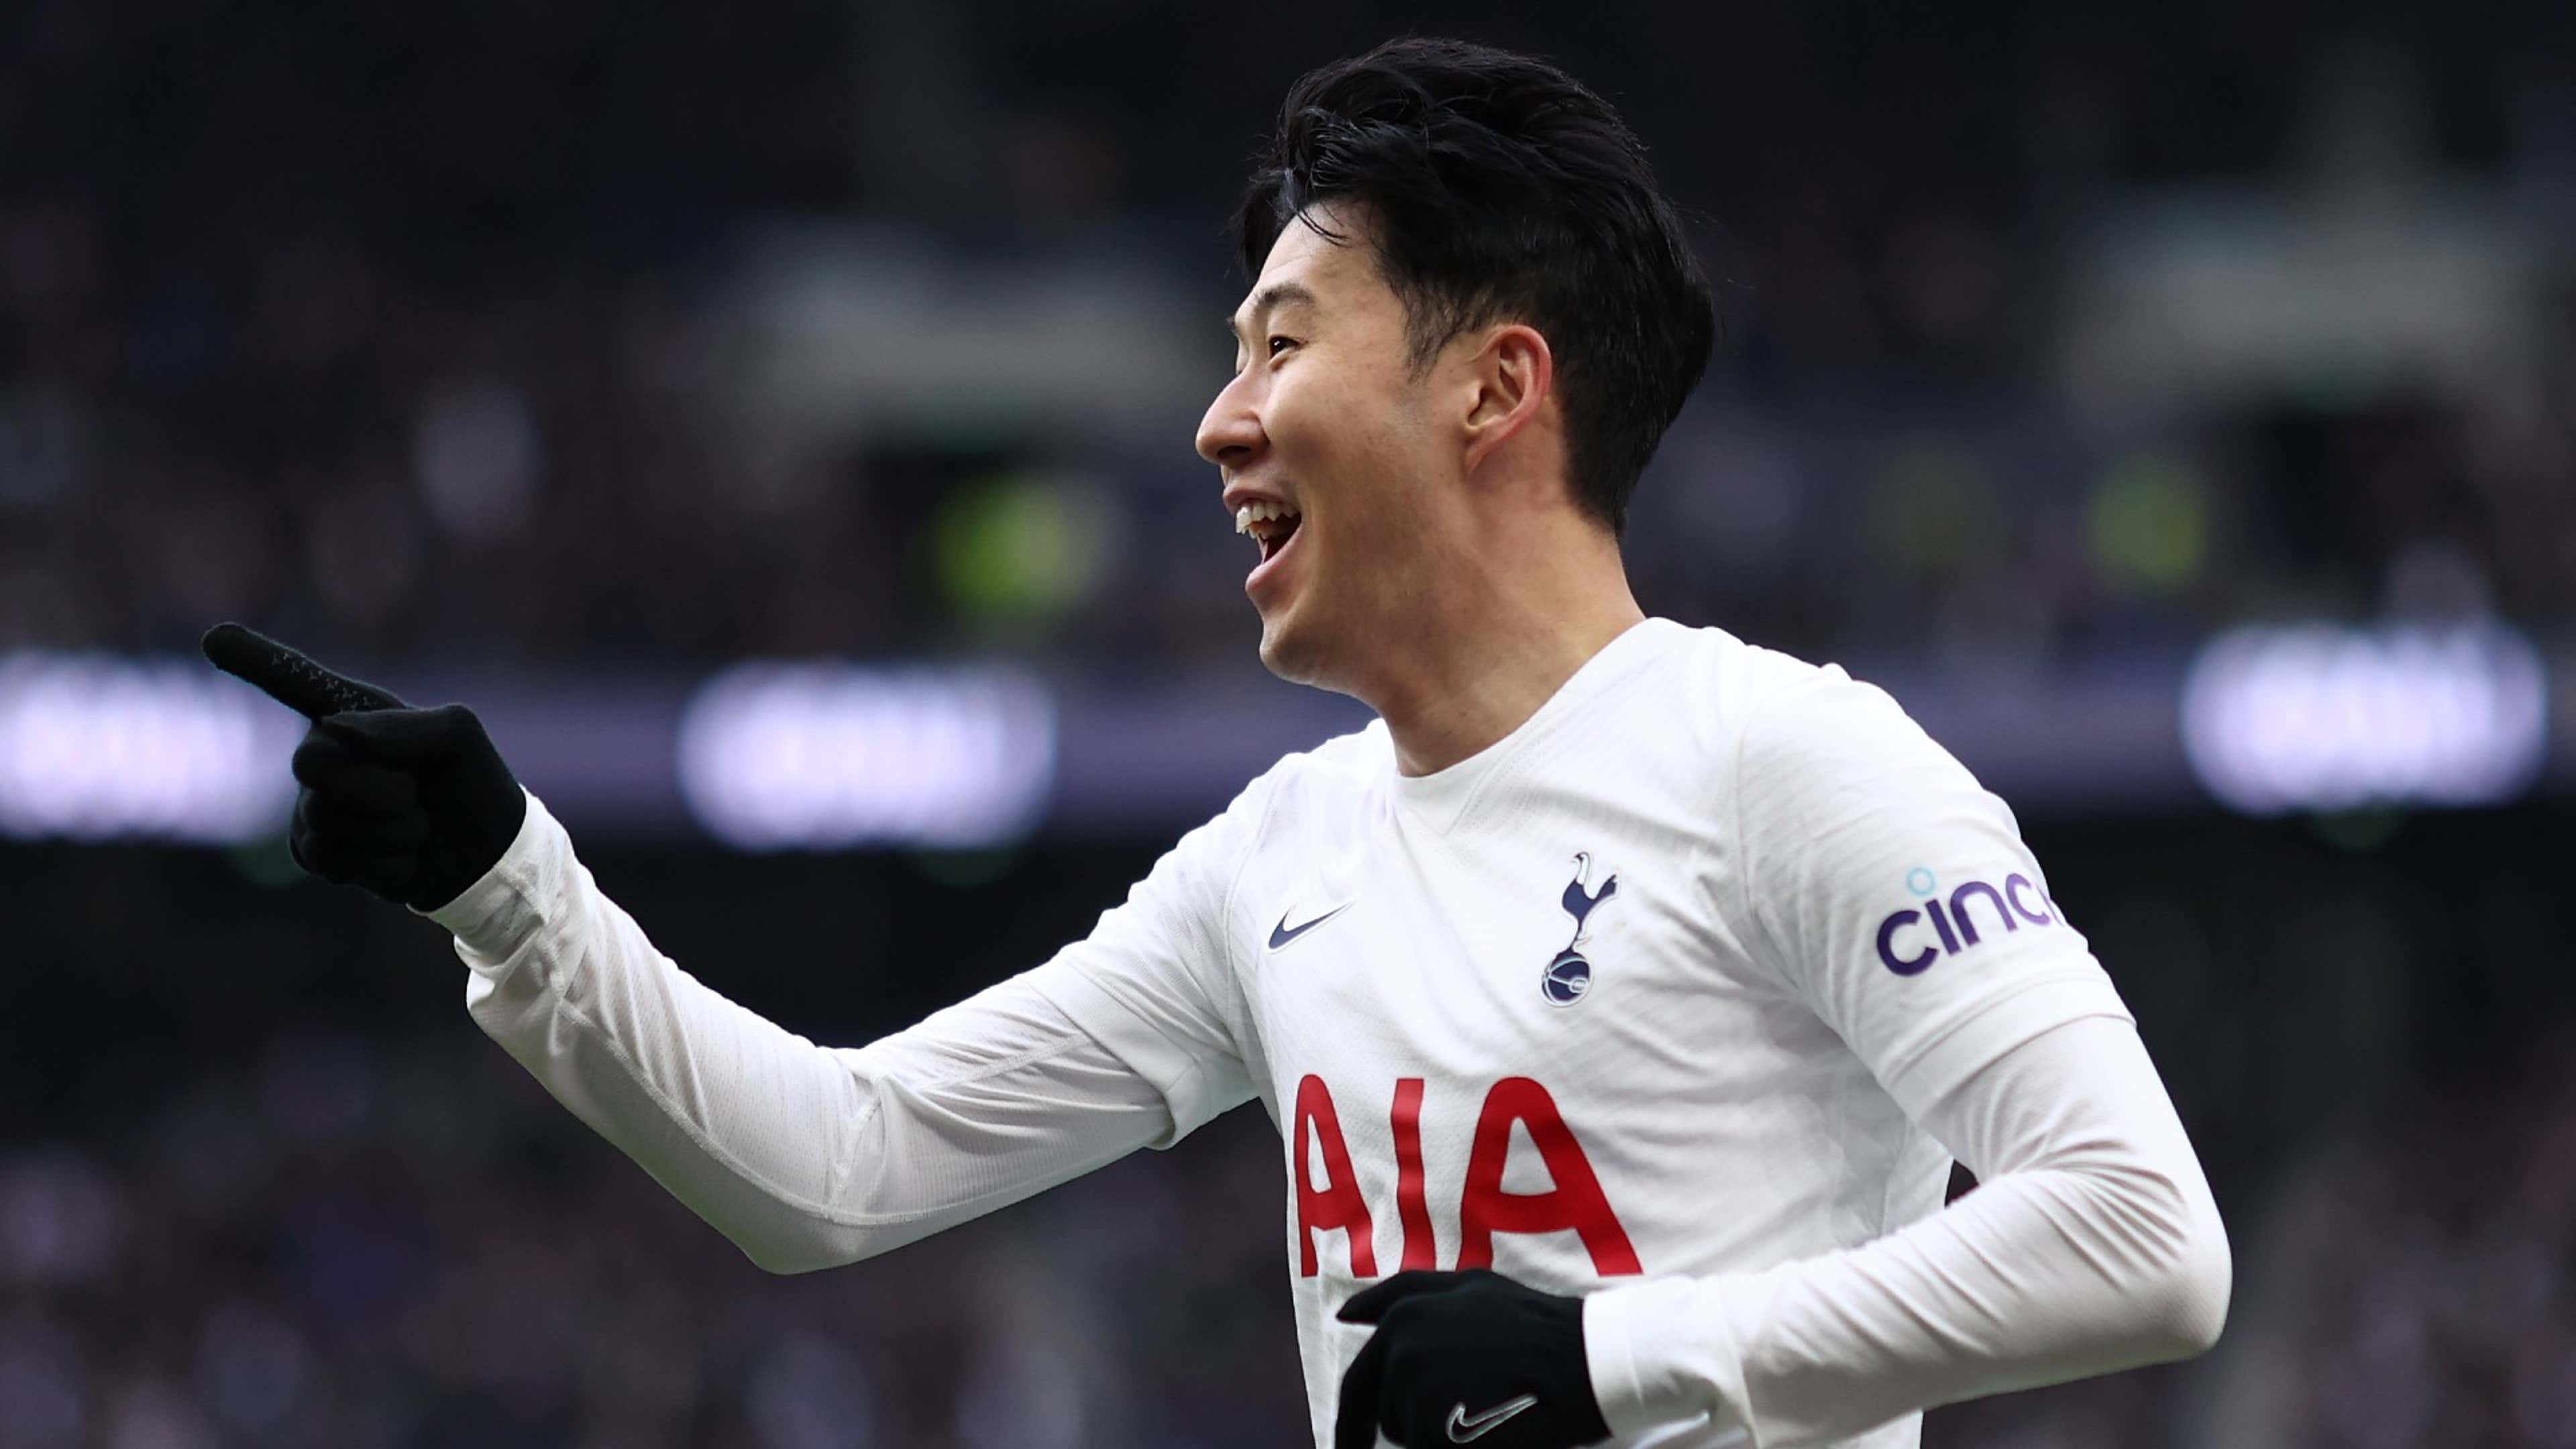 Son Heung-min receives 'best performance' award as Tottenham star